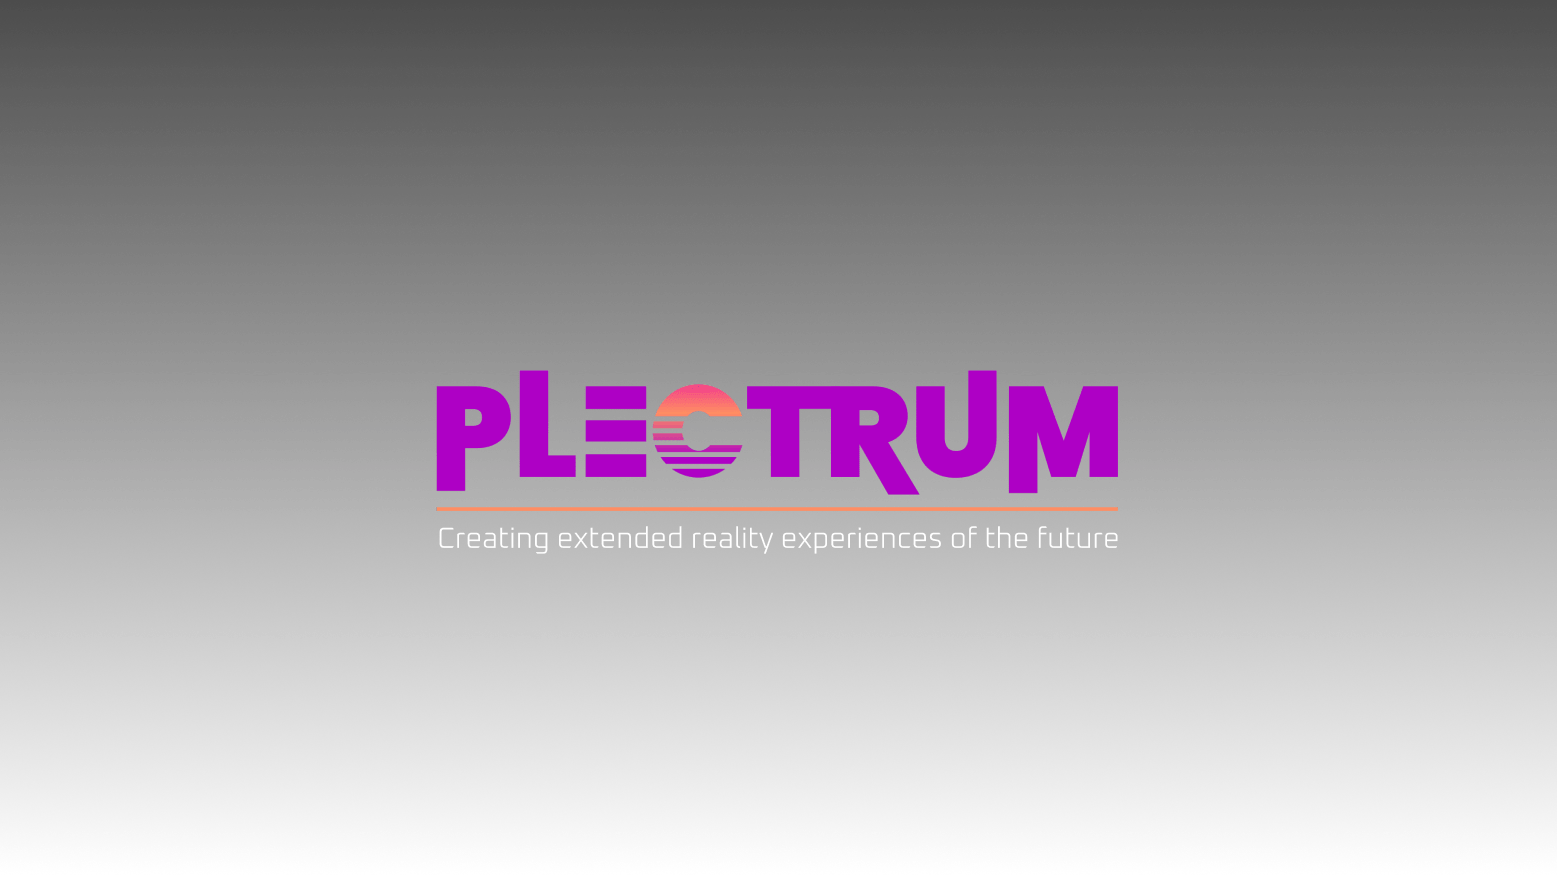 Plectrum Description